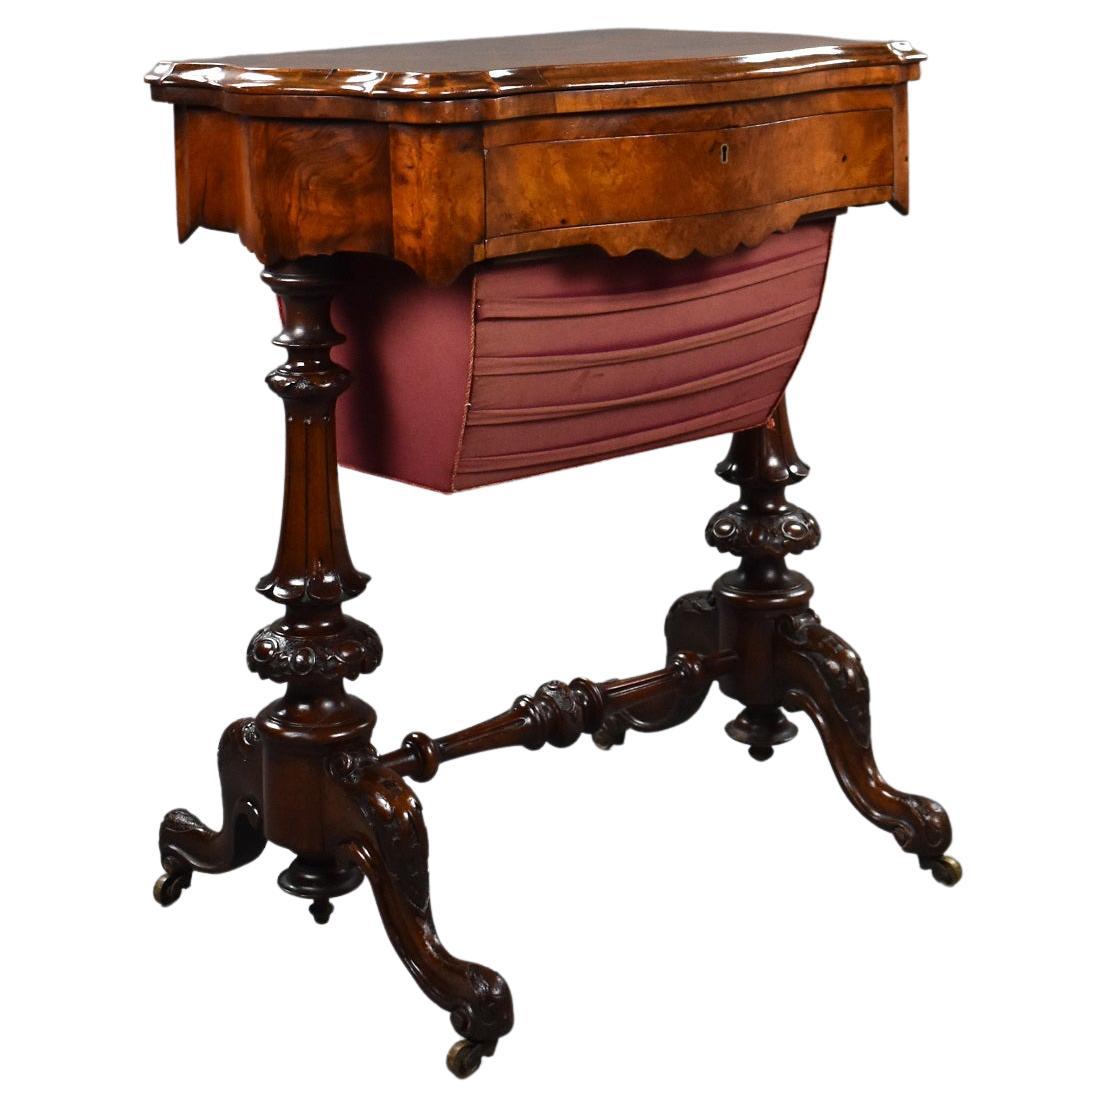 Englischer viktorianischer Spieltisch aus Wurzelnussholz aus dem 19. Jahrhundert